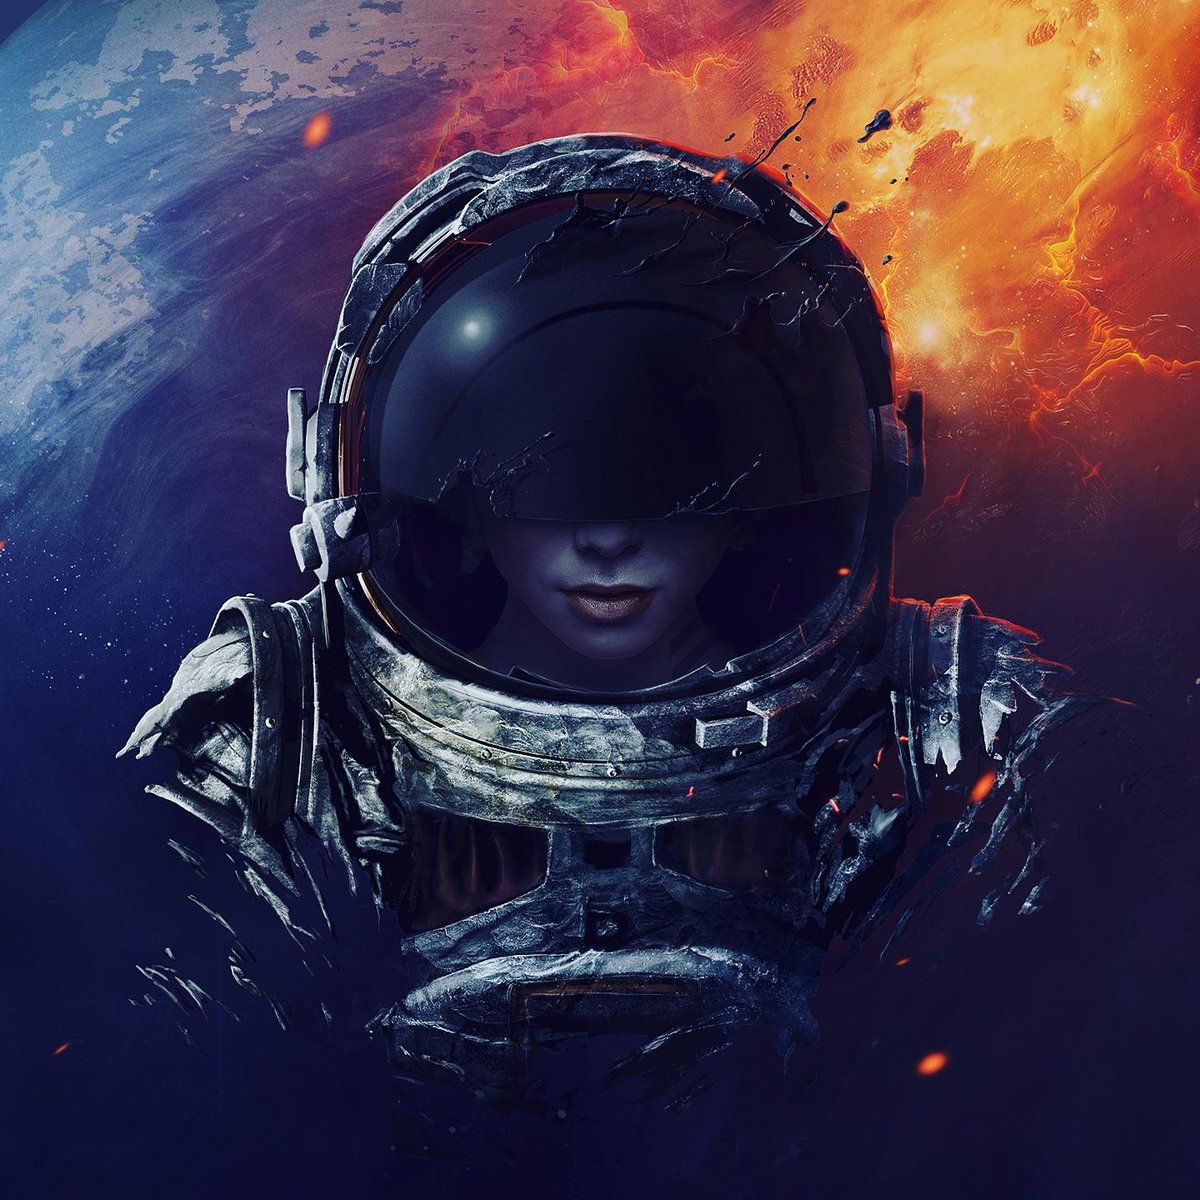 Eines meiner Favoriten 😍 #astronaut #sido #ichhebab #nichts #hält #mich #am #boden #amazing